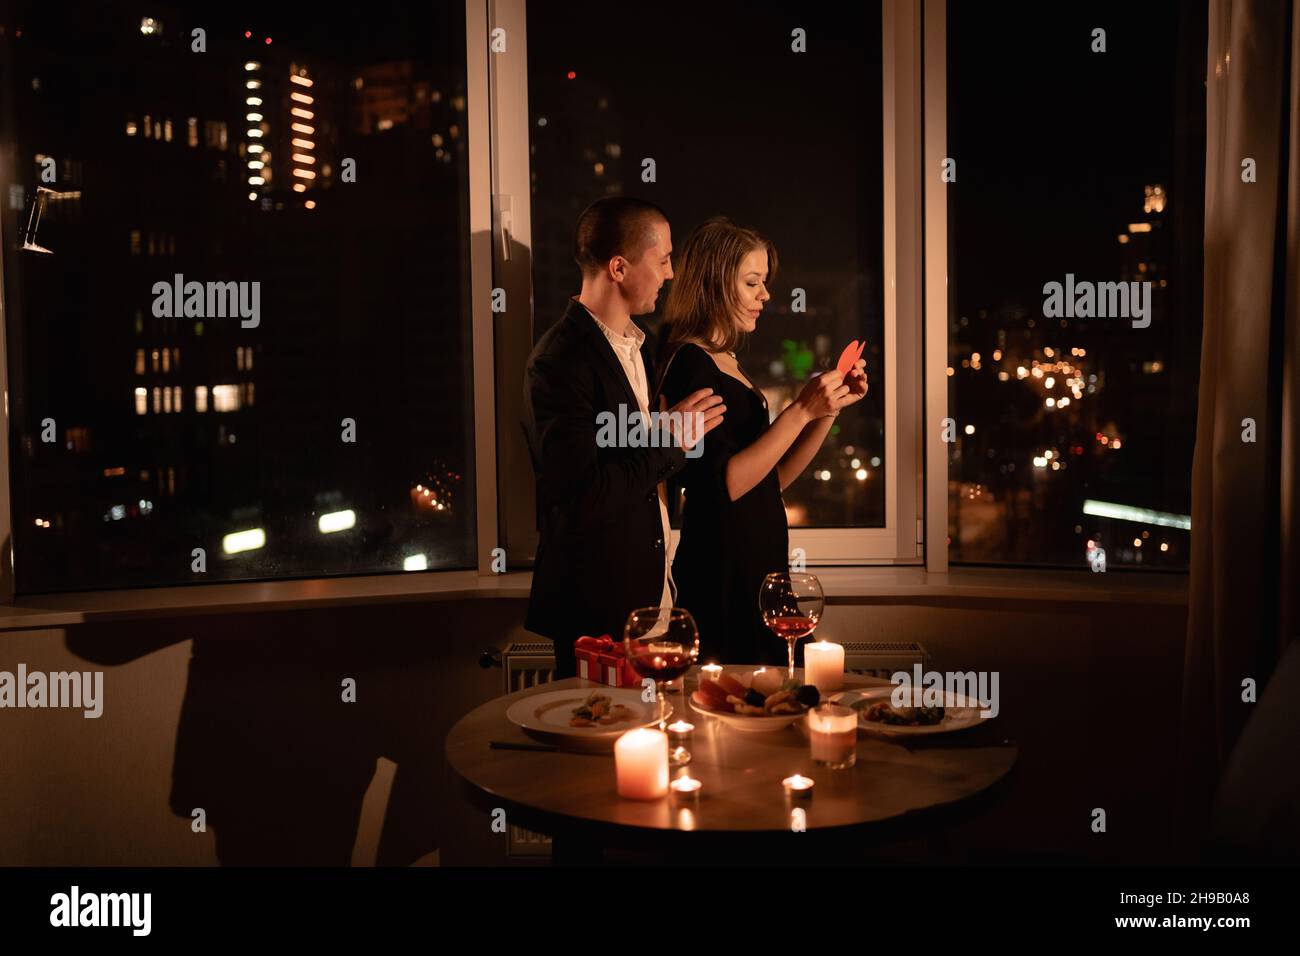 Verliebte Paare feiern valentinstag-Abendessen mit Kerzen, Jahrestag oder Datum in der Nacht in einem Restaurant, dunkle Fenster Hintergrund, leidenschaftlicher Mann Stockfoto